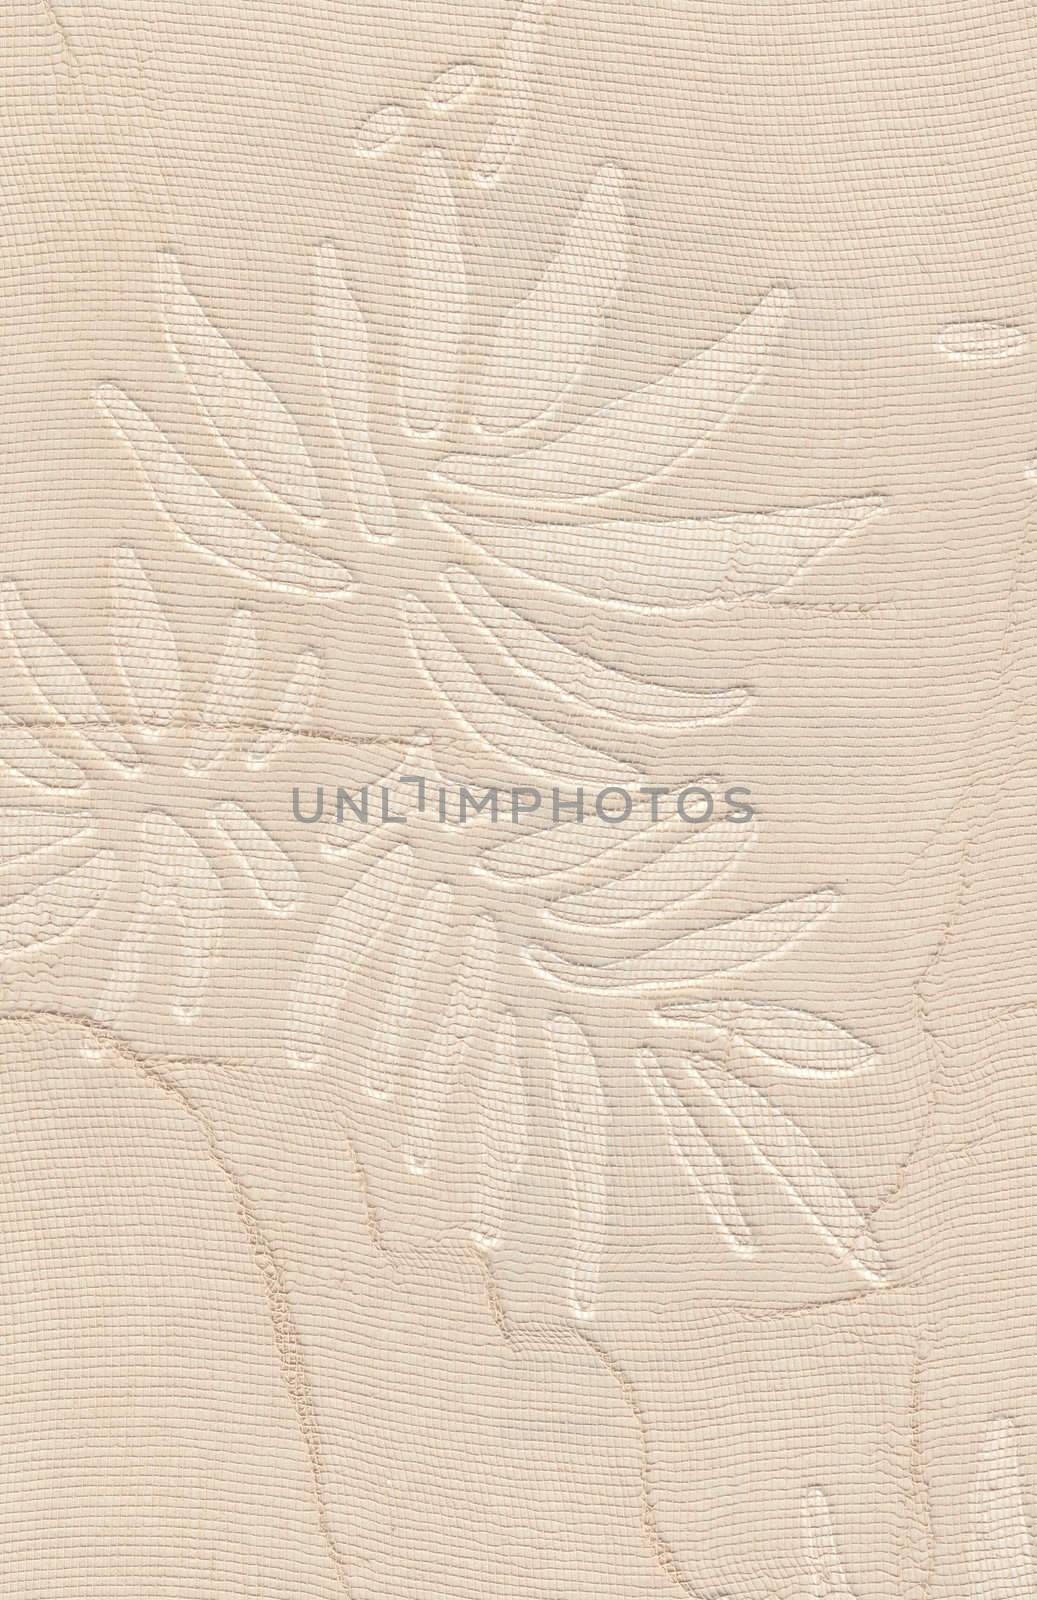 Grungy vintage wallpaper design. flower leaf retro ornate damask